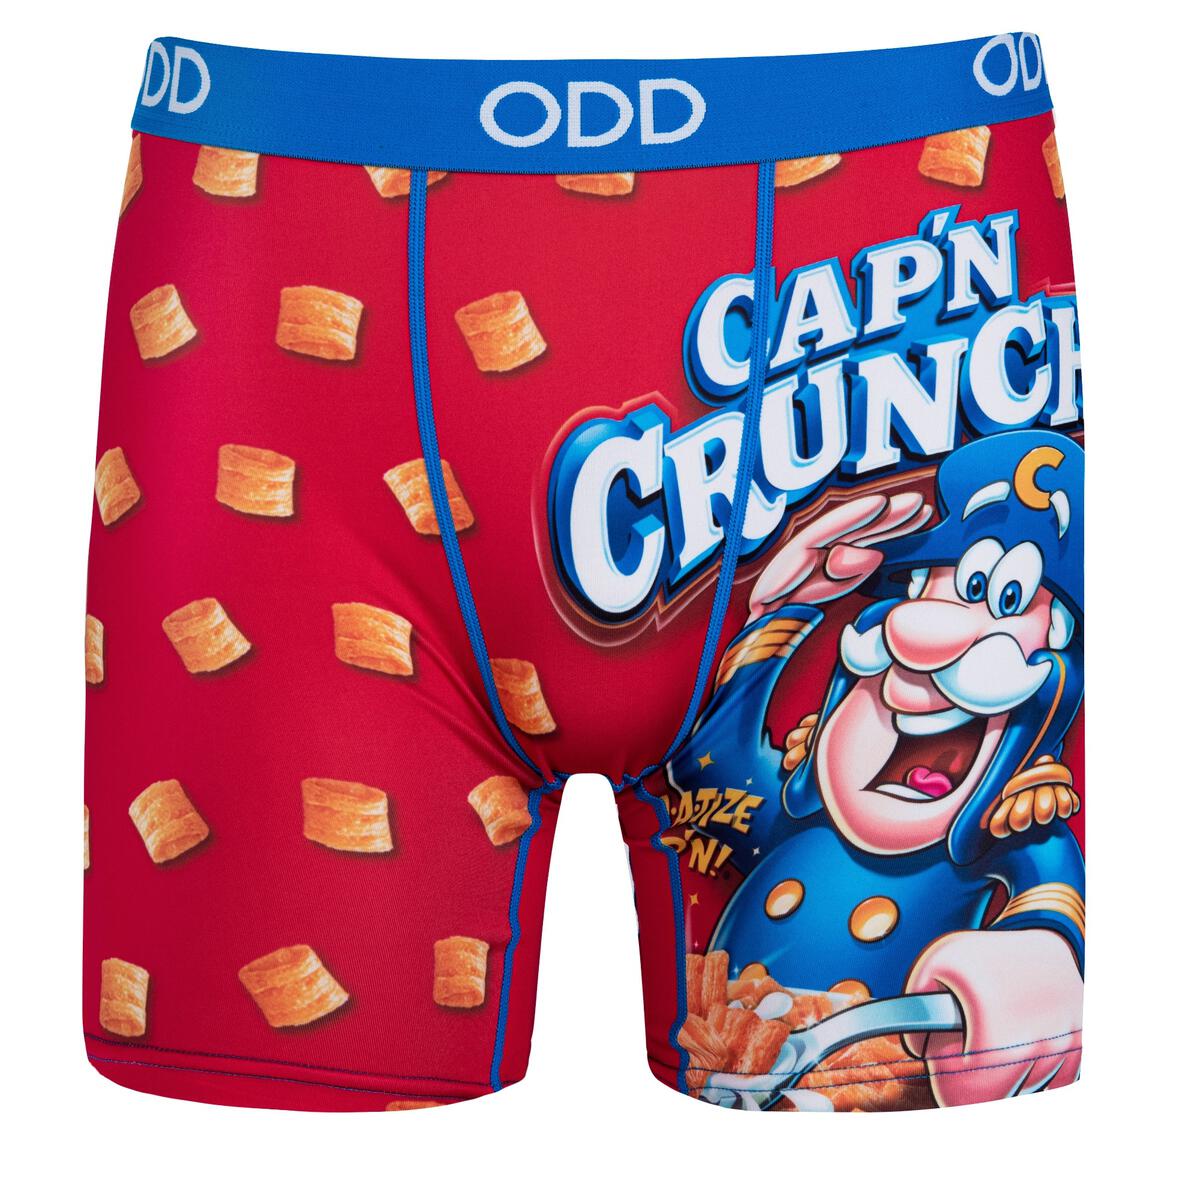 Cap'n Crunch Box